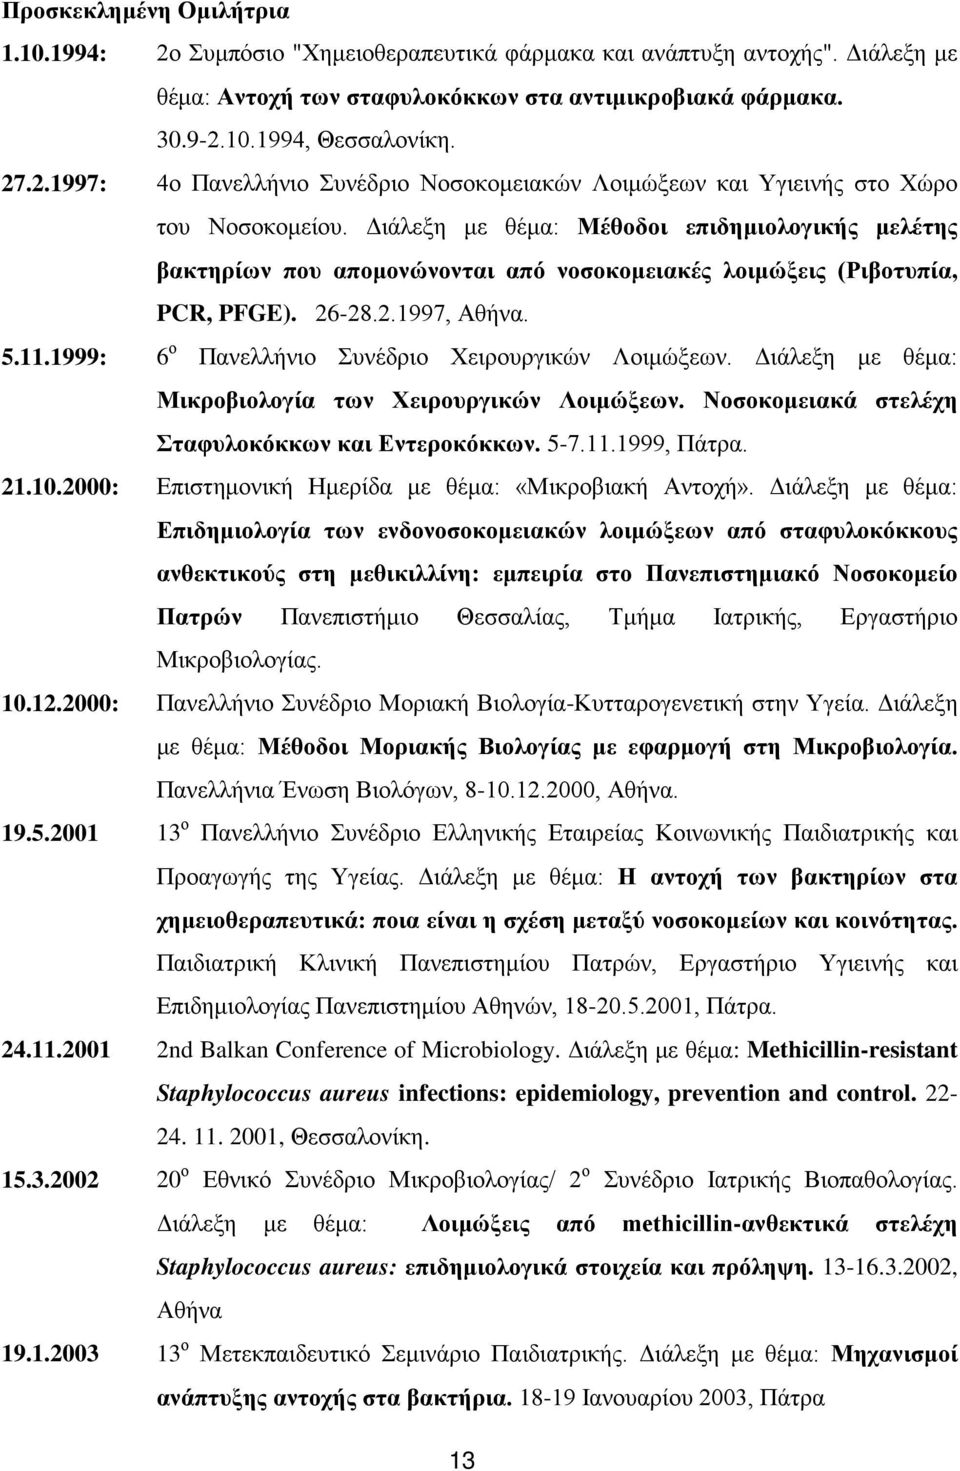 Διάλεξη με θέμα: Μέθοδοι επιδημιολογικής μελέτης βακτηρίων που απομονώνονται από νοσοκομειακές λοιμώξεις (Ριβοτυπία, PCR, PFGE). 26-28.2.1997, Αθήνα. 5.11.